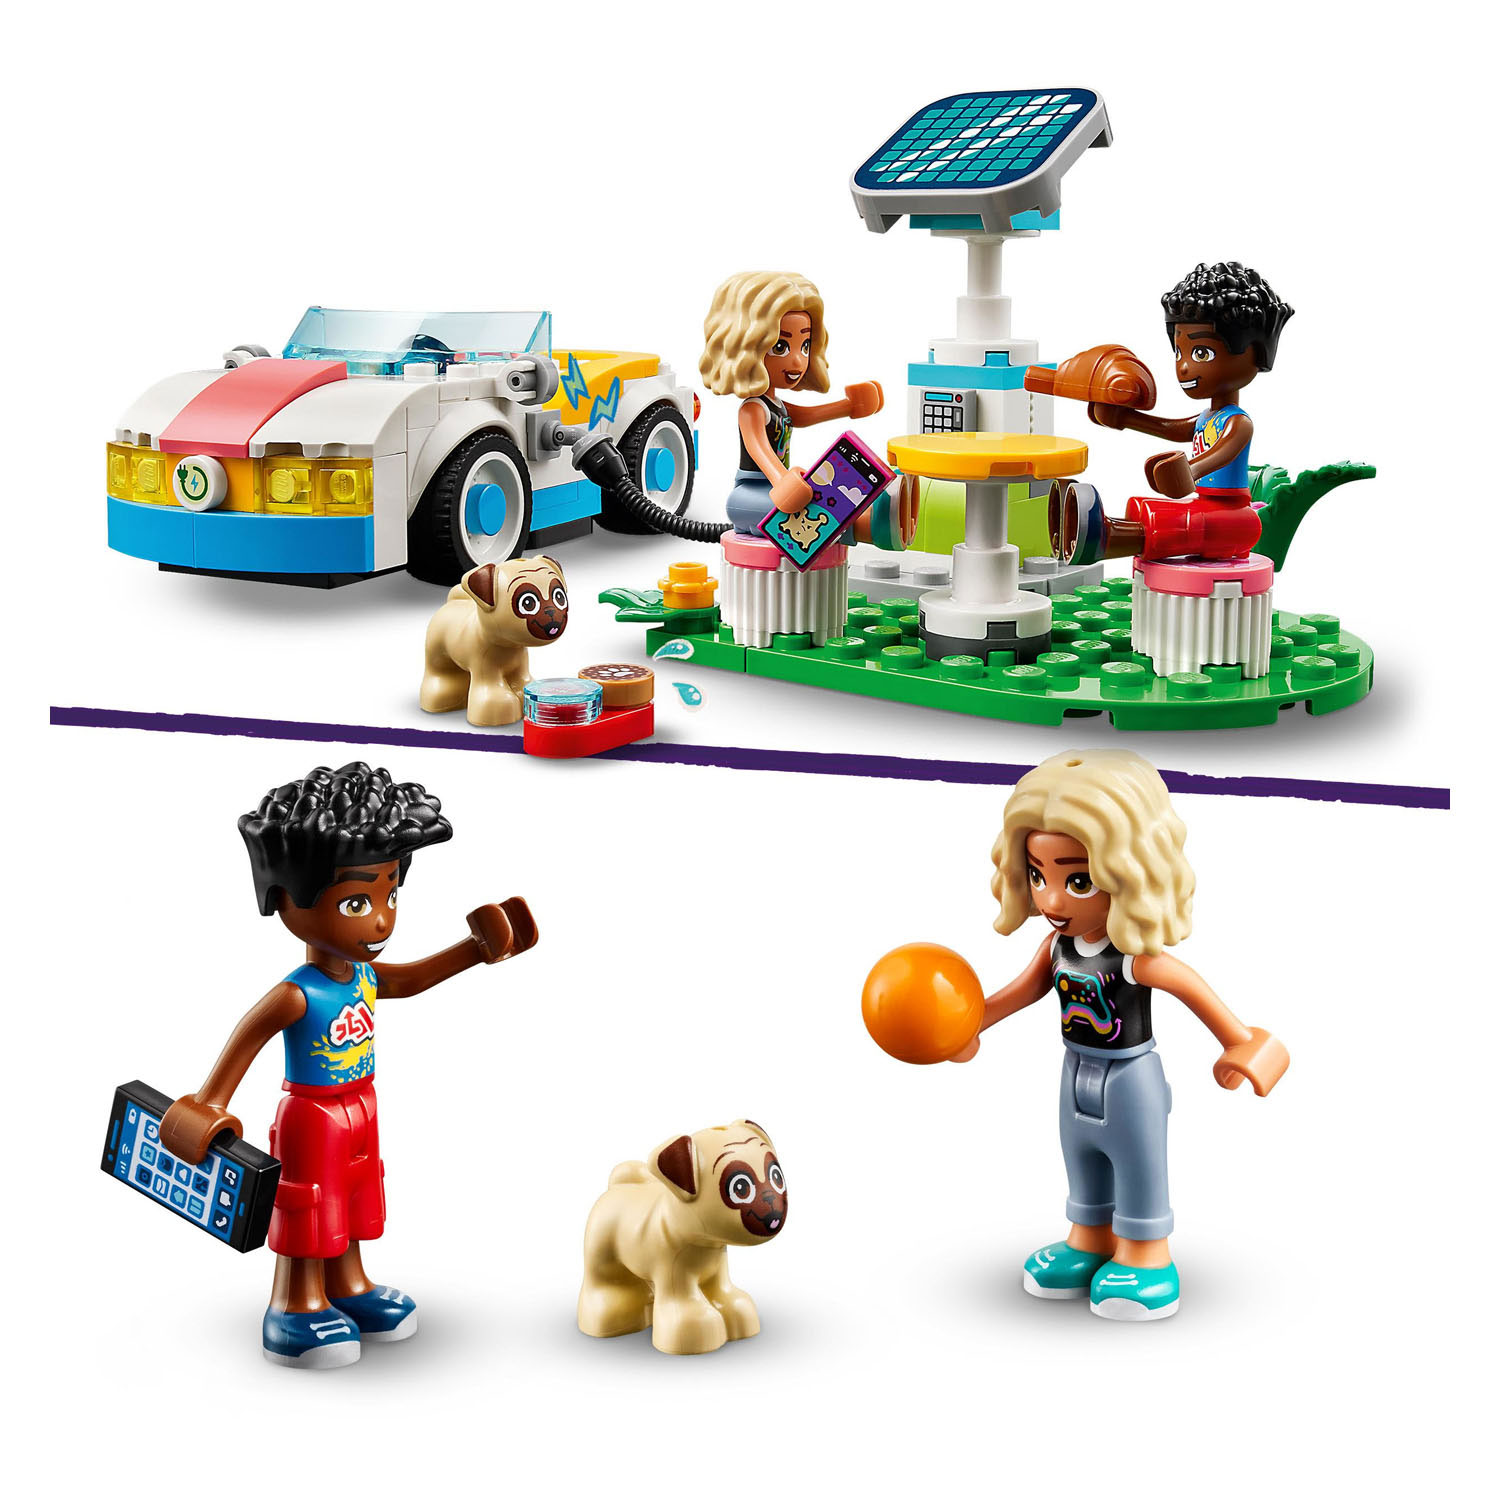 LEGO Friends 42609 Voiture électrique et point de recharge